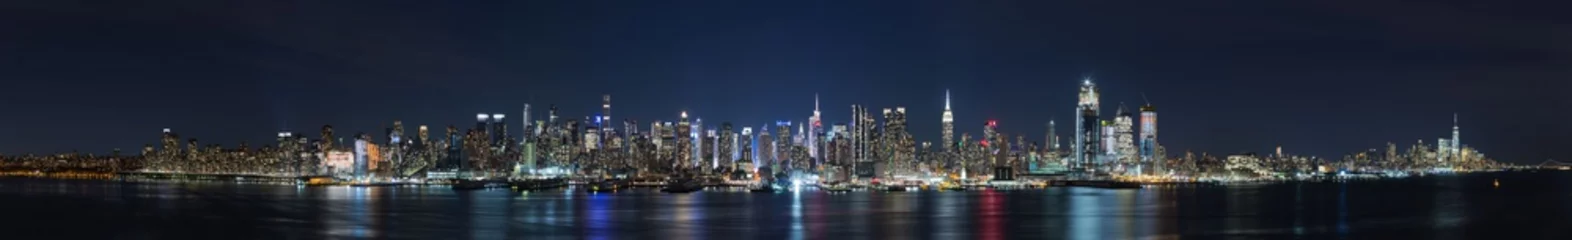 Zelfklevend Fotobehang Panoramisch uitzicht op de nacht in Manhattan, stadsgezichten van New York, USA © Sen